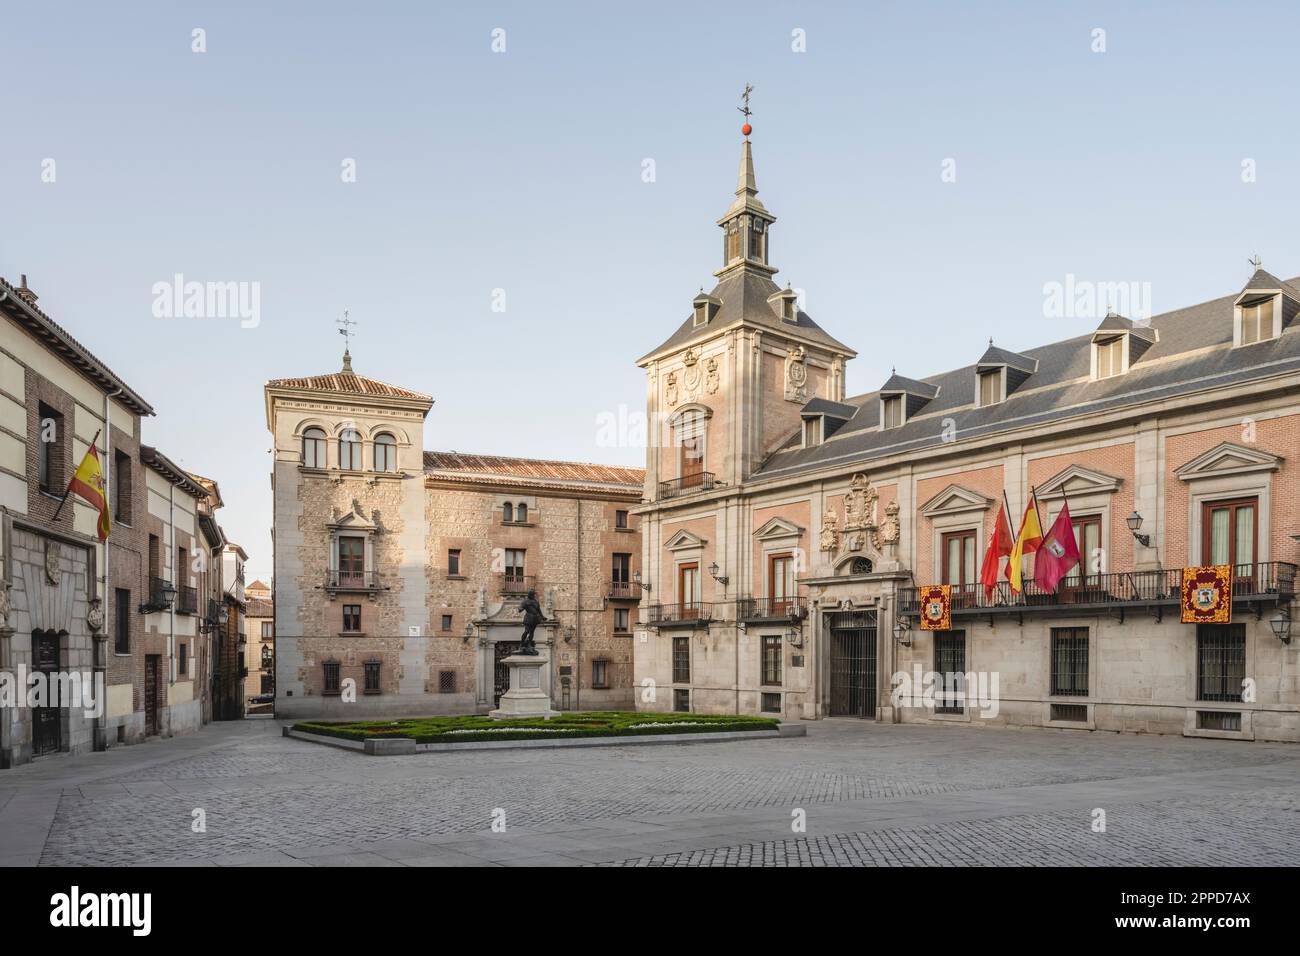 Spain, Madrid, Empty Plaza de la Villa square with Casa de la Villa in background Stock Photo